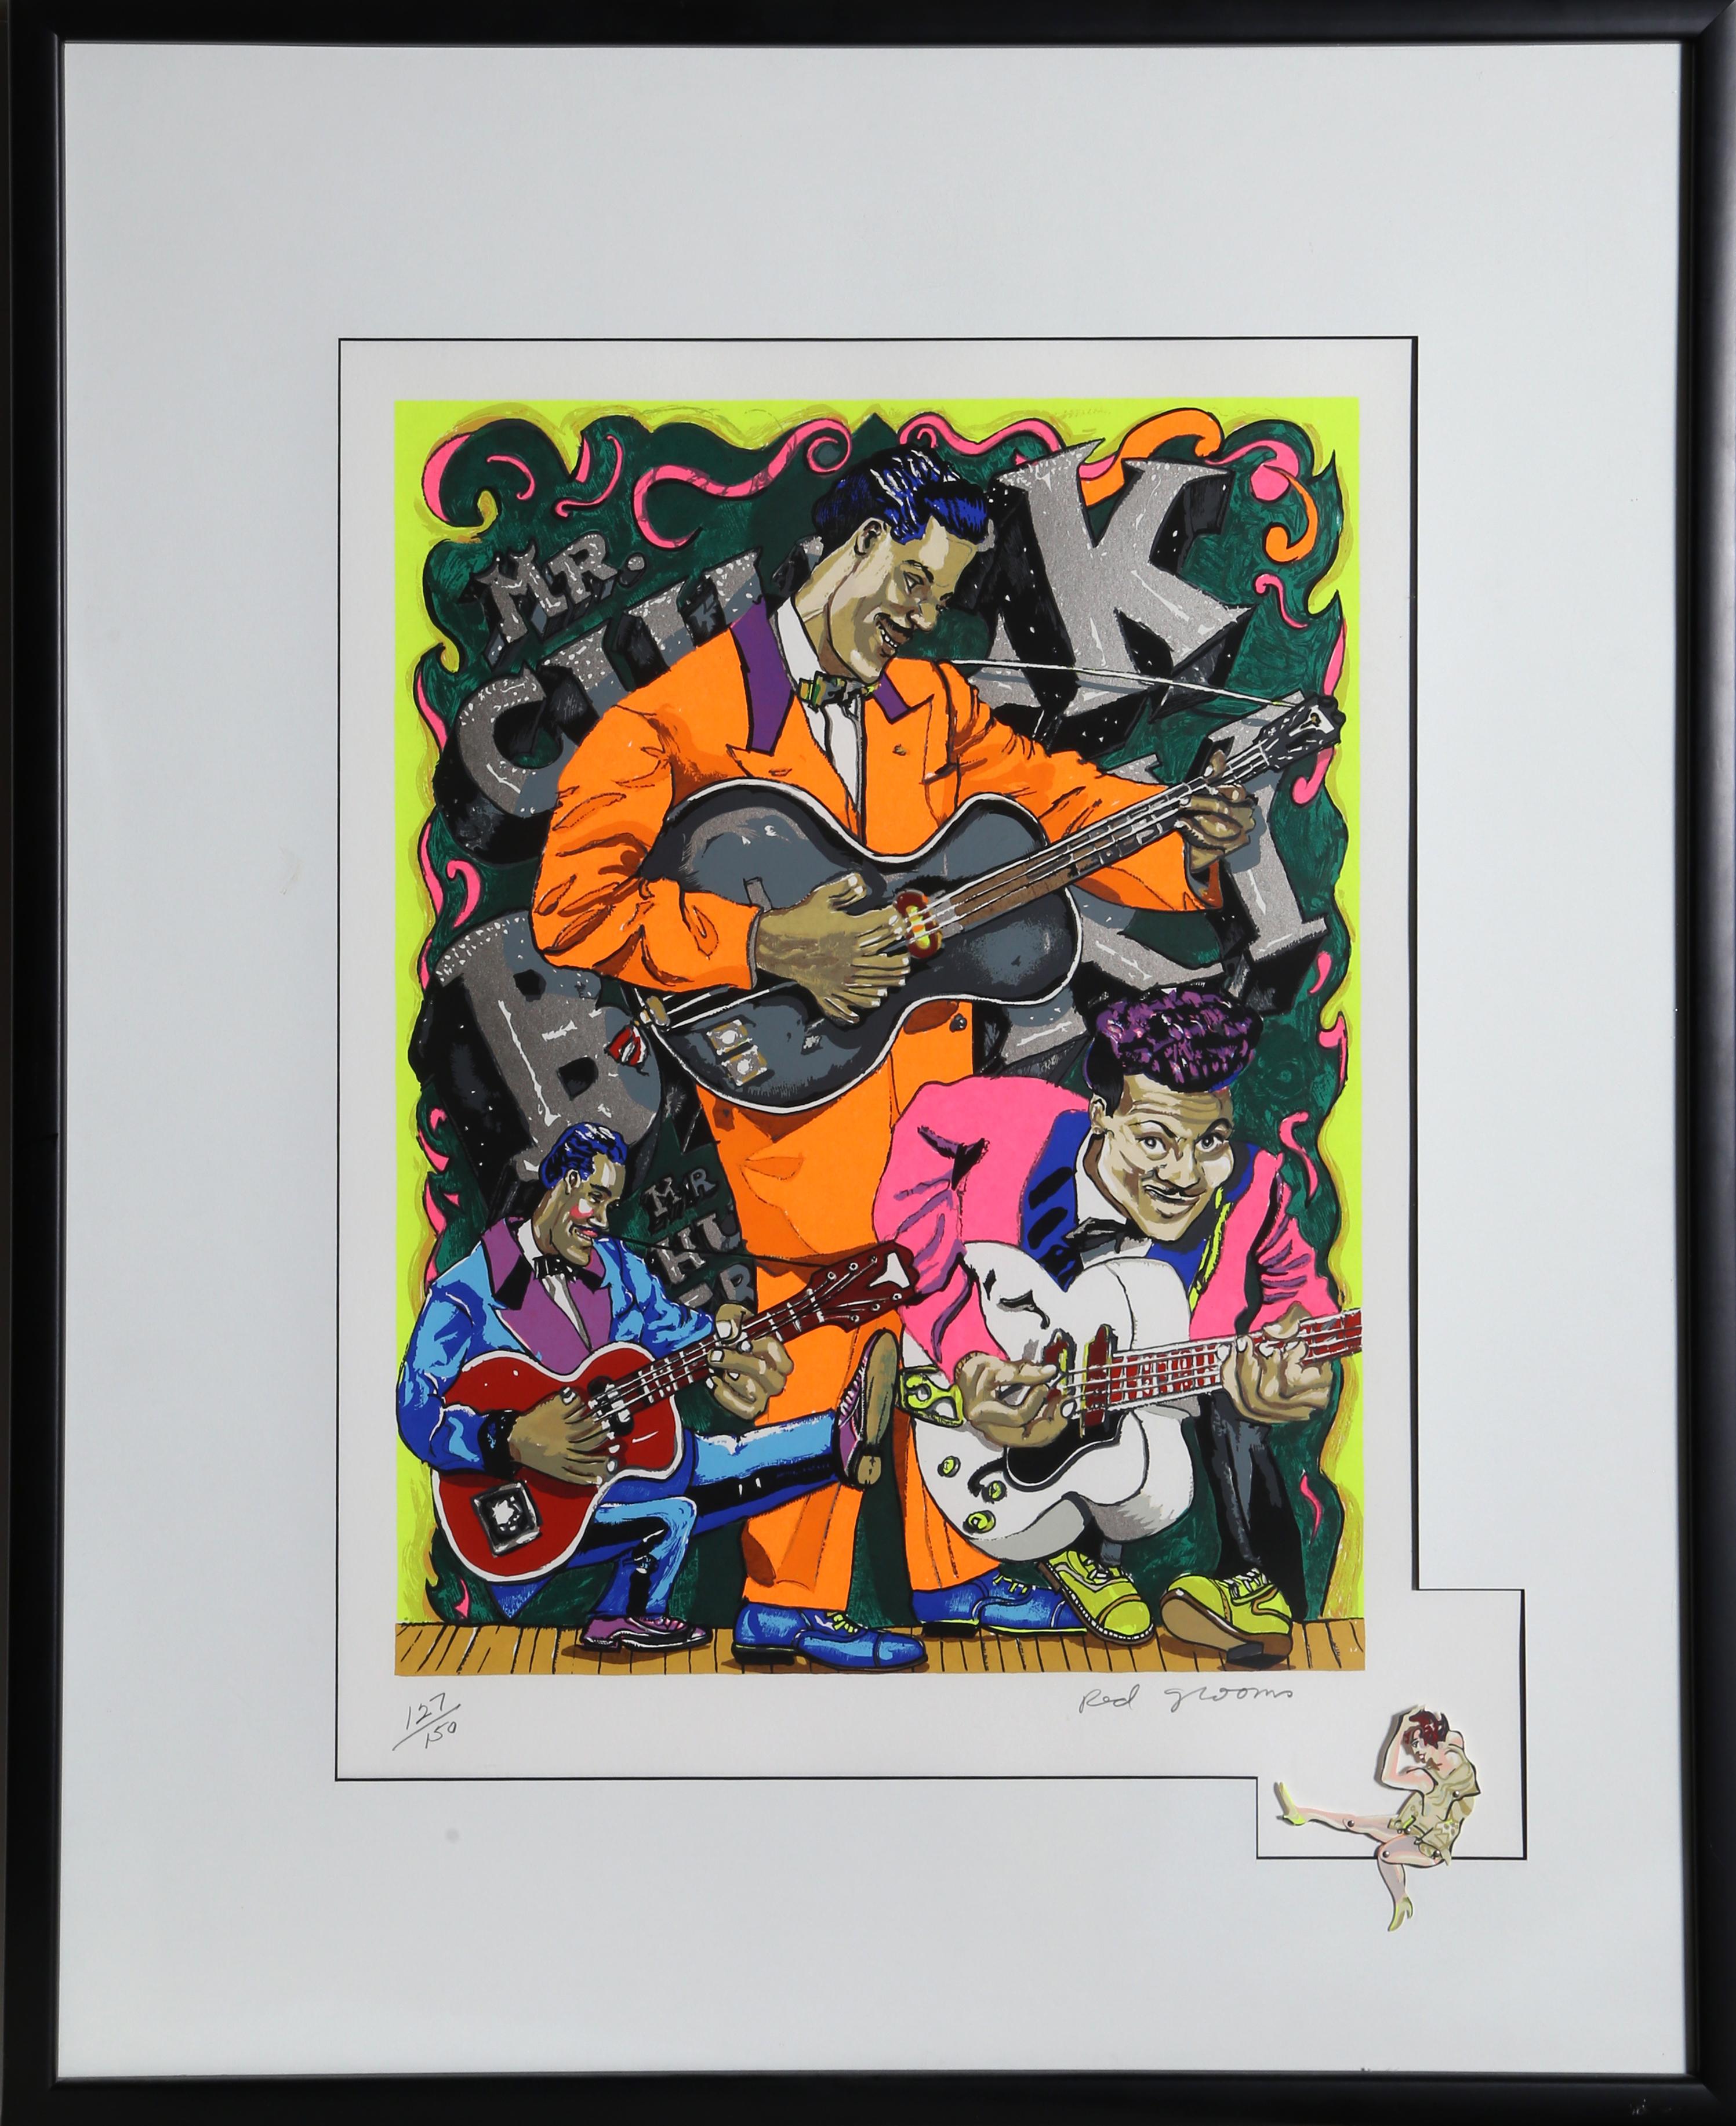 M. Chuck Berry par Red Grooms, américain (1937)
Date : 1978
Sérigraphie avec 3-D "Dancer", signée et numérotée au crayon
Edition de 127/150
Taille de l'image : 24 x 18.25 pouces
Taille : 33 x 26 in. (83.82 x 66.04 cm)
Taille du cadre : 40 x 32.5